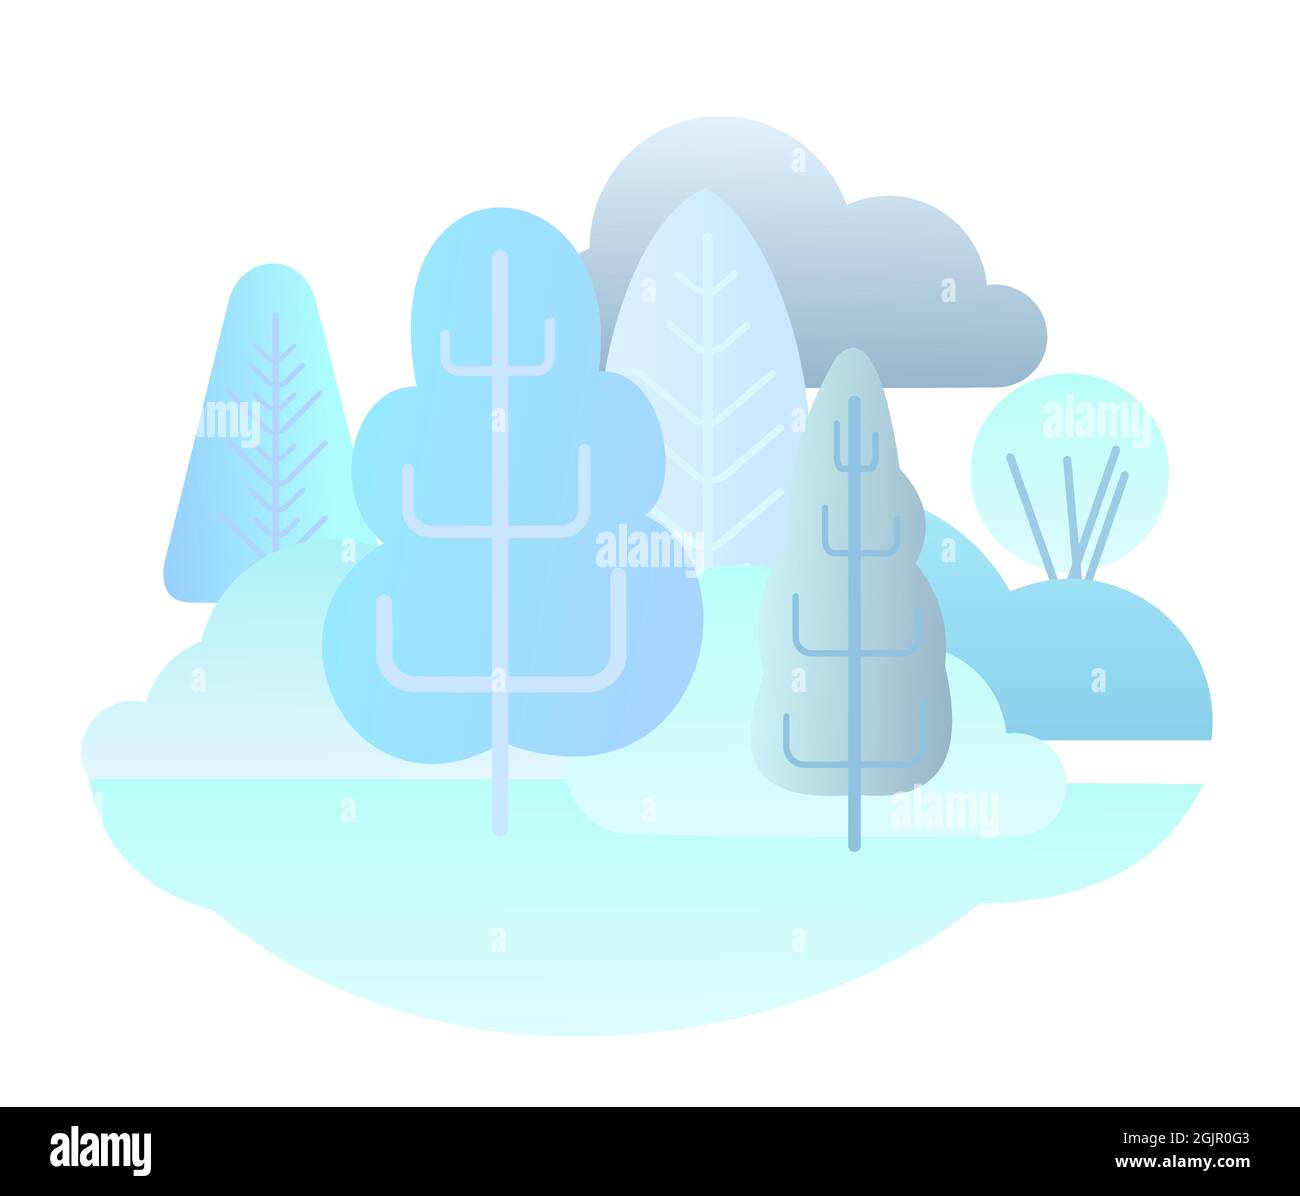 Paisaje forestal de invierno. Ilustración simbólica de estilo plano. Paisaje con árboles, arbustos y snowdrifts. Vida silvestre rural. Vistas al campo con heladas Ilustración del Vector